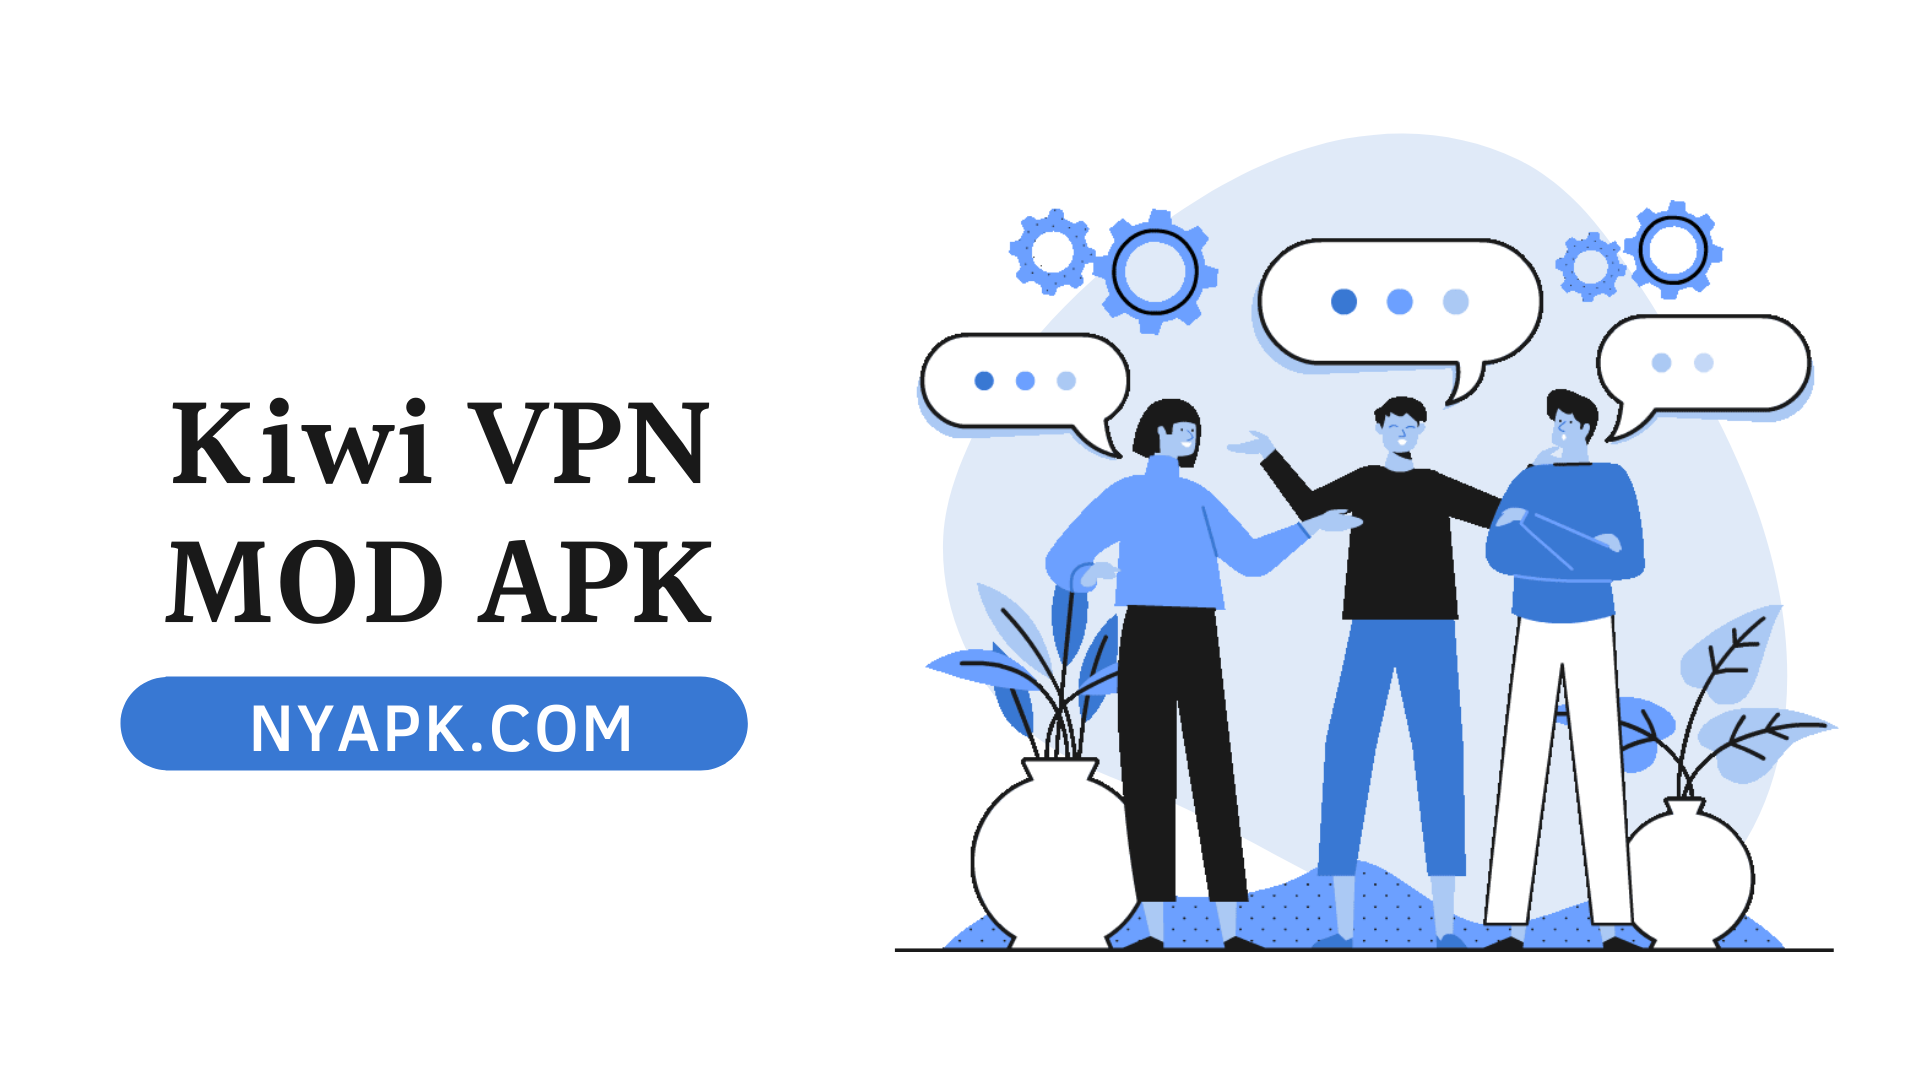 Kiwi VPN MOD APK